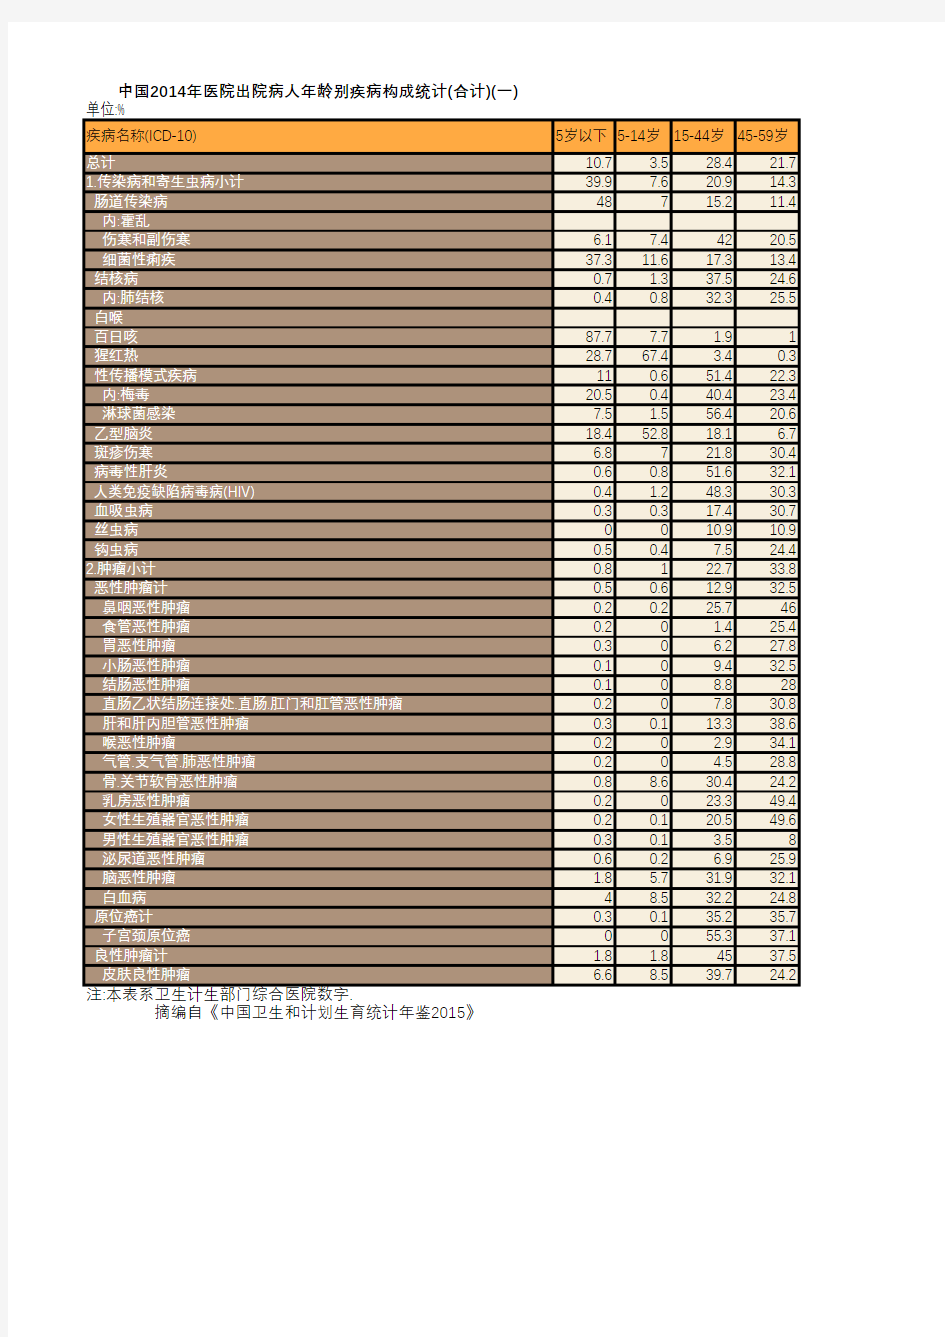 卫生健康年鉴2015：中国2014年医院出院病人年龄别疾病构成统计(合计)(一)